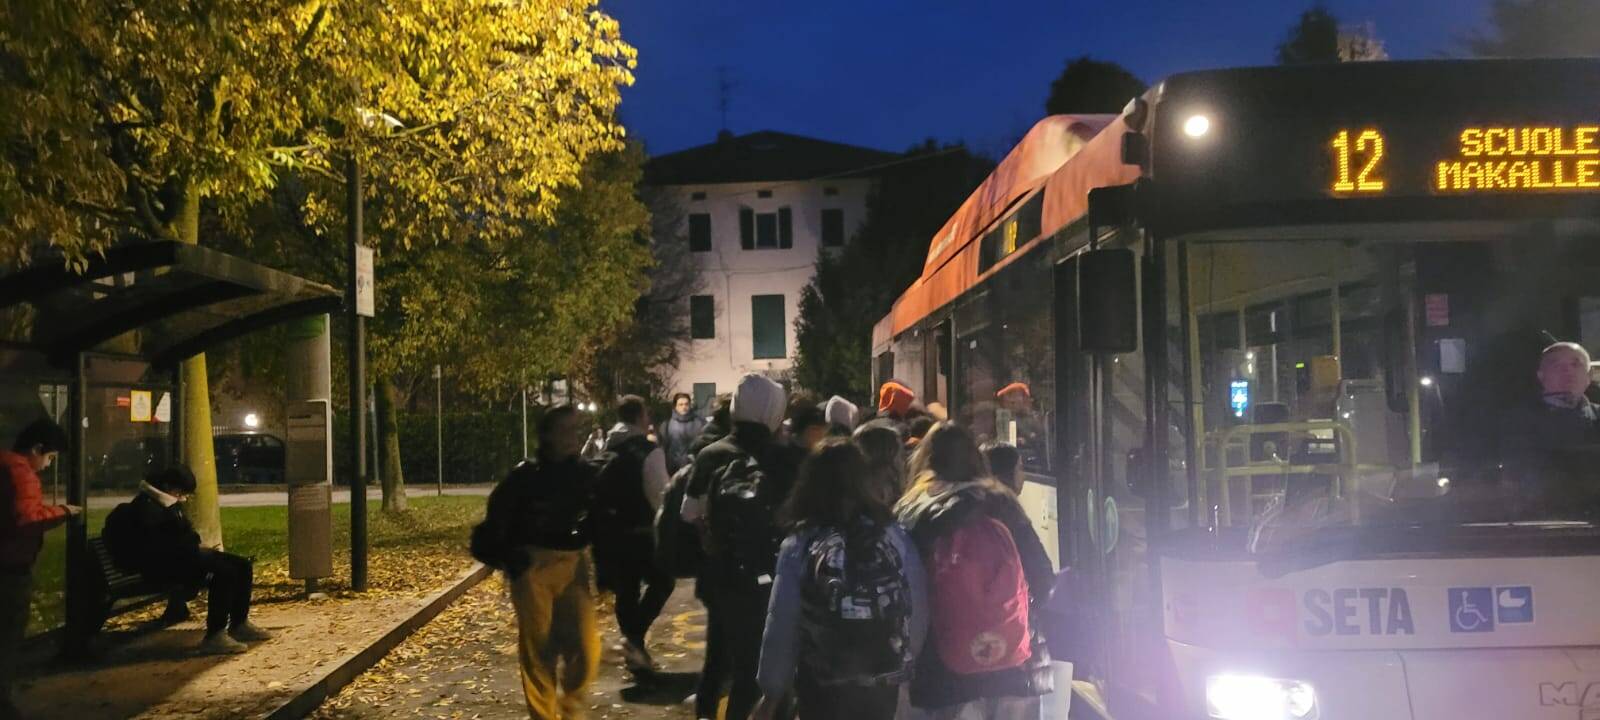 Disagi sugli autobus a Roncocesi e Cavazzoli: si raccolgono firme